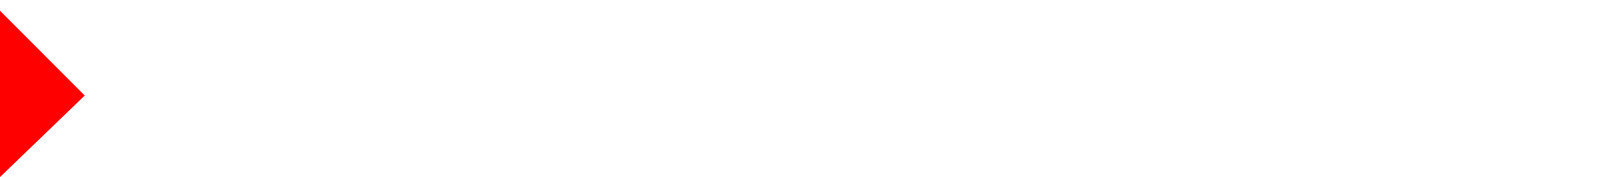 MM-Logo-WhiteTextRedM